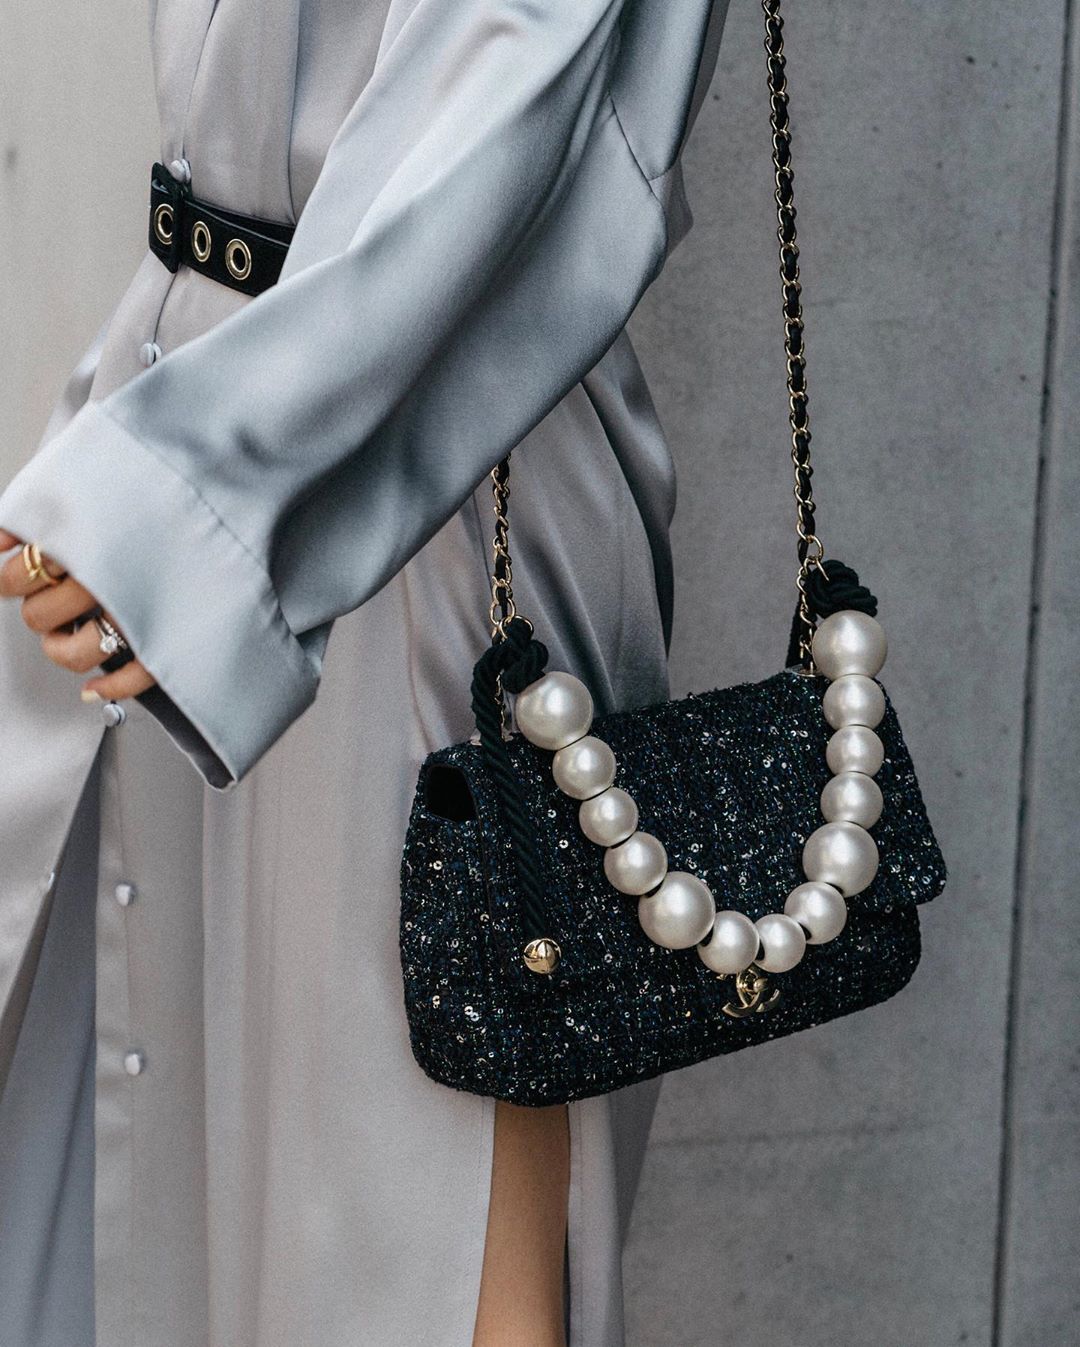 Túi xách thương hiệu thời trang Chanel màu đen quai xách ngọc trai